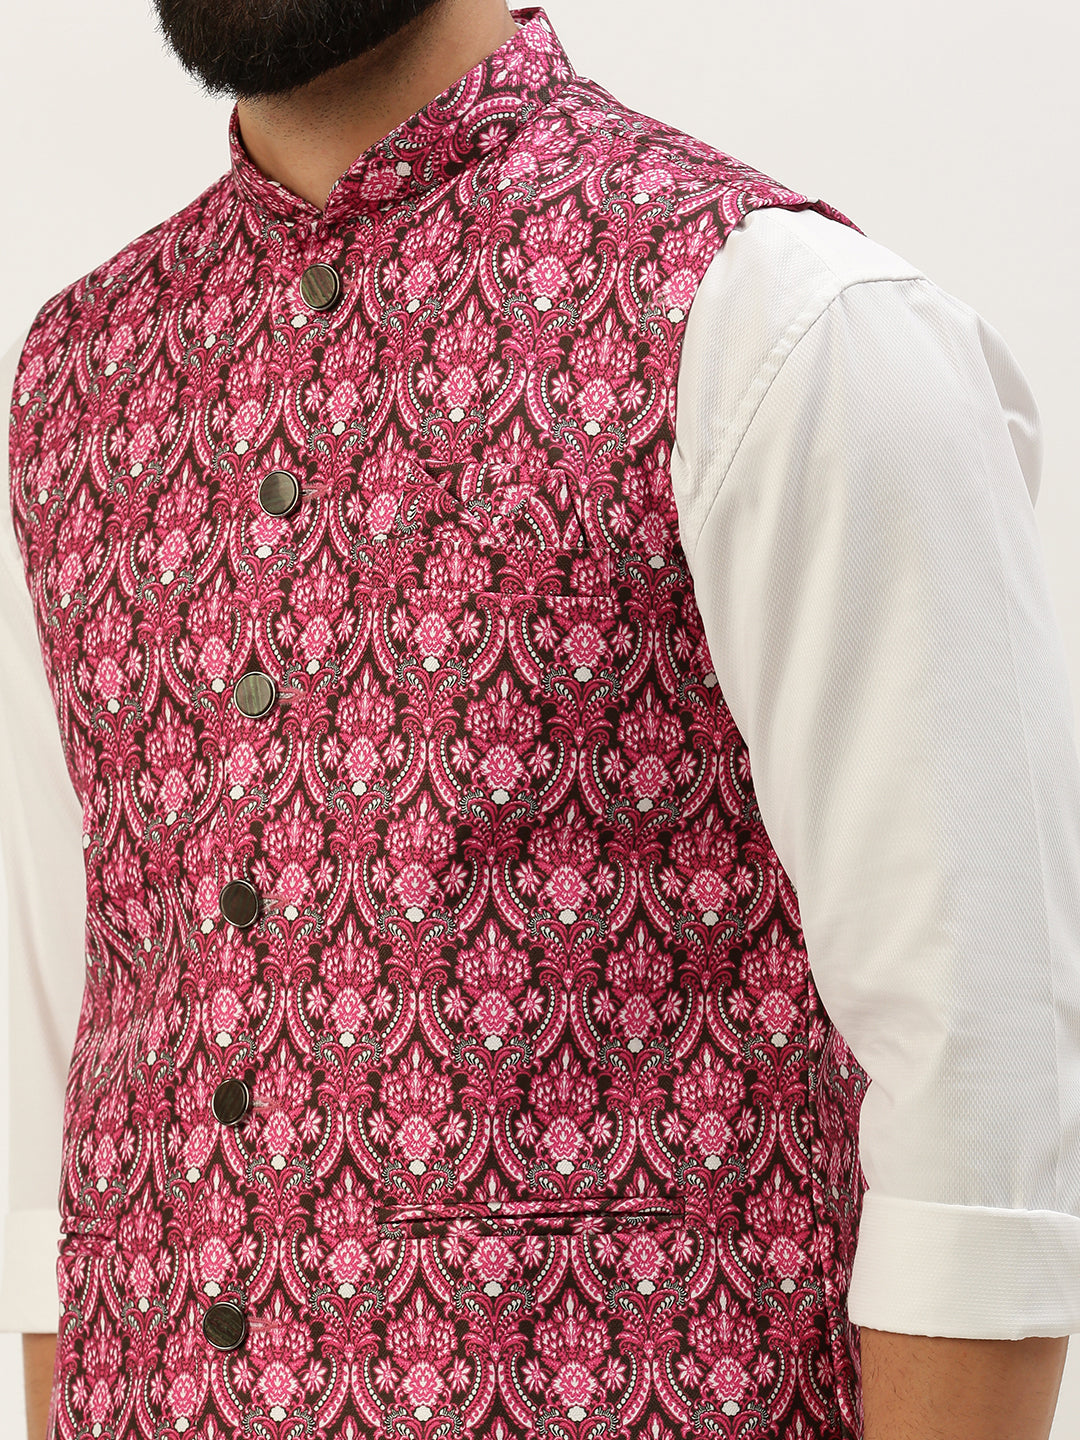 Men Mandarin Collar Printed Pink Nehru Jacket